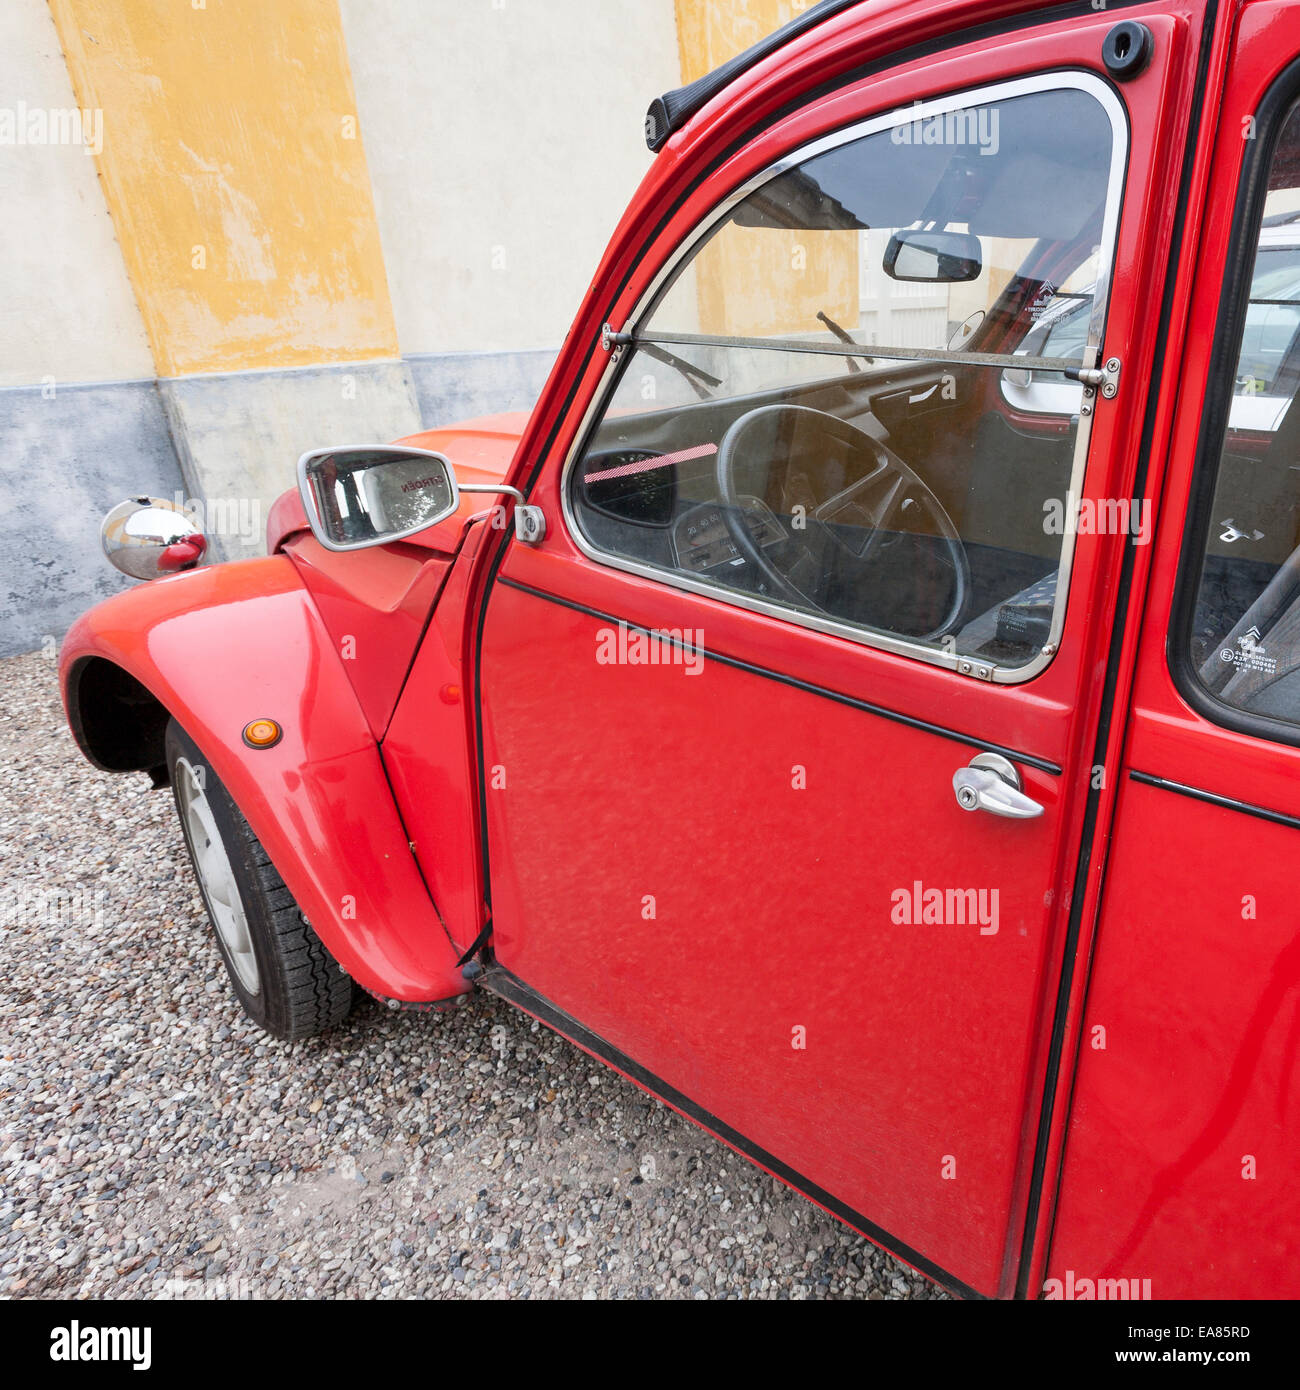 Seite von einer roten 2 cv6 Club Citroen. Ein seitlicher Blick auf dieses alte klassische Automobil in rot. Stockfoto